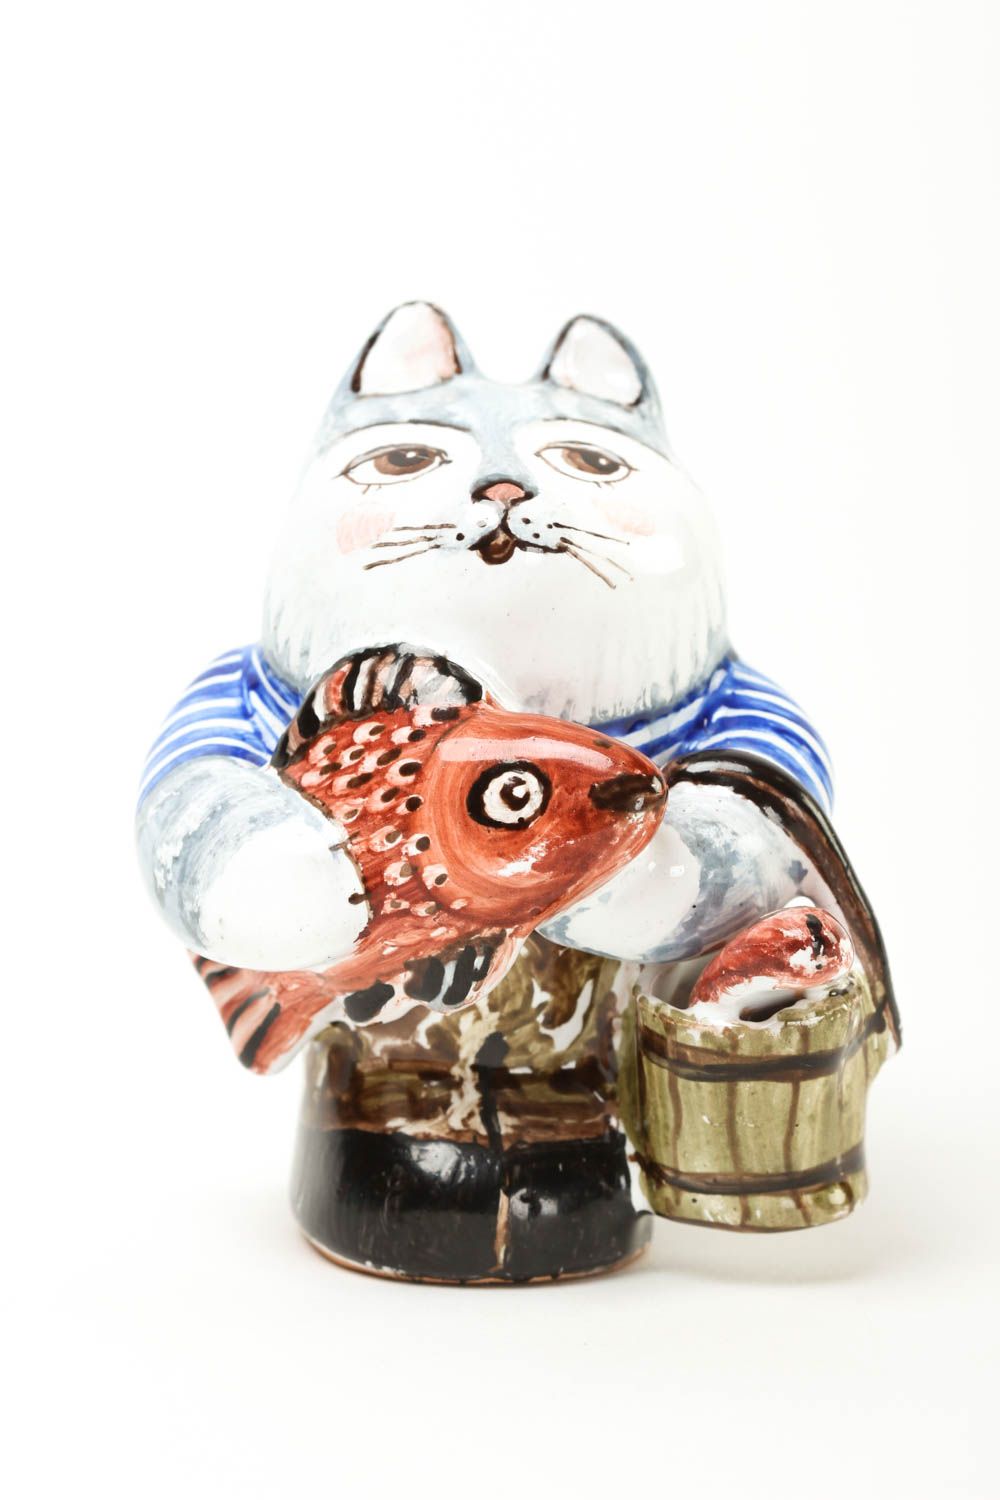 Статуэтка животного ручной работы статуэтка для декора фигурка из глины Кот фото 2